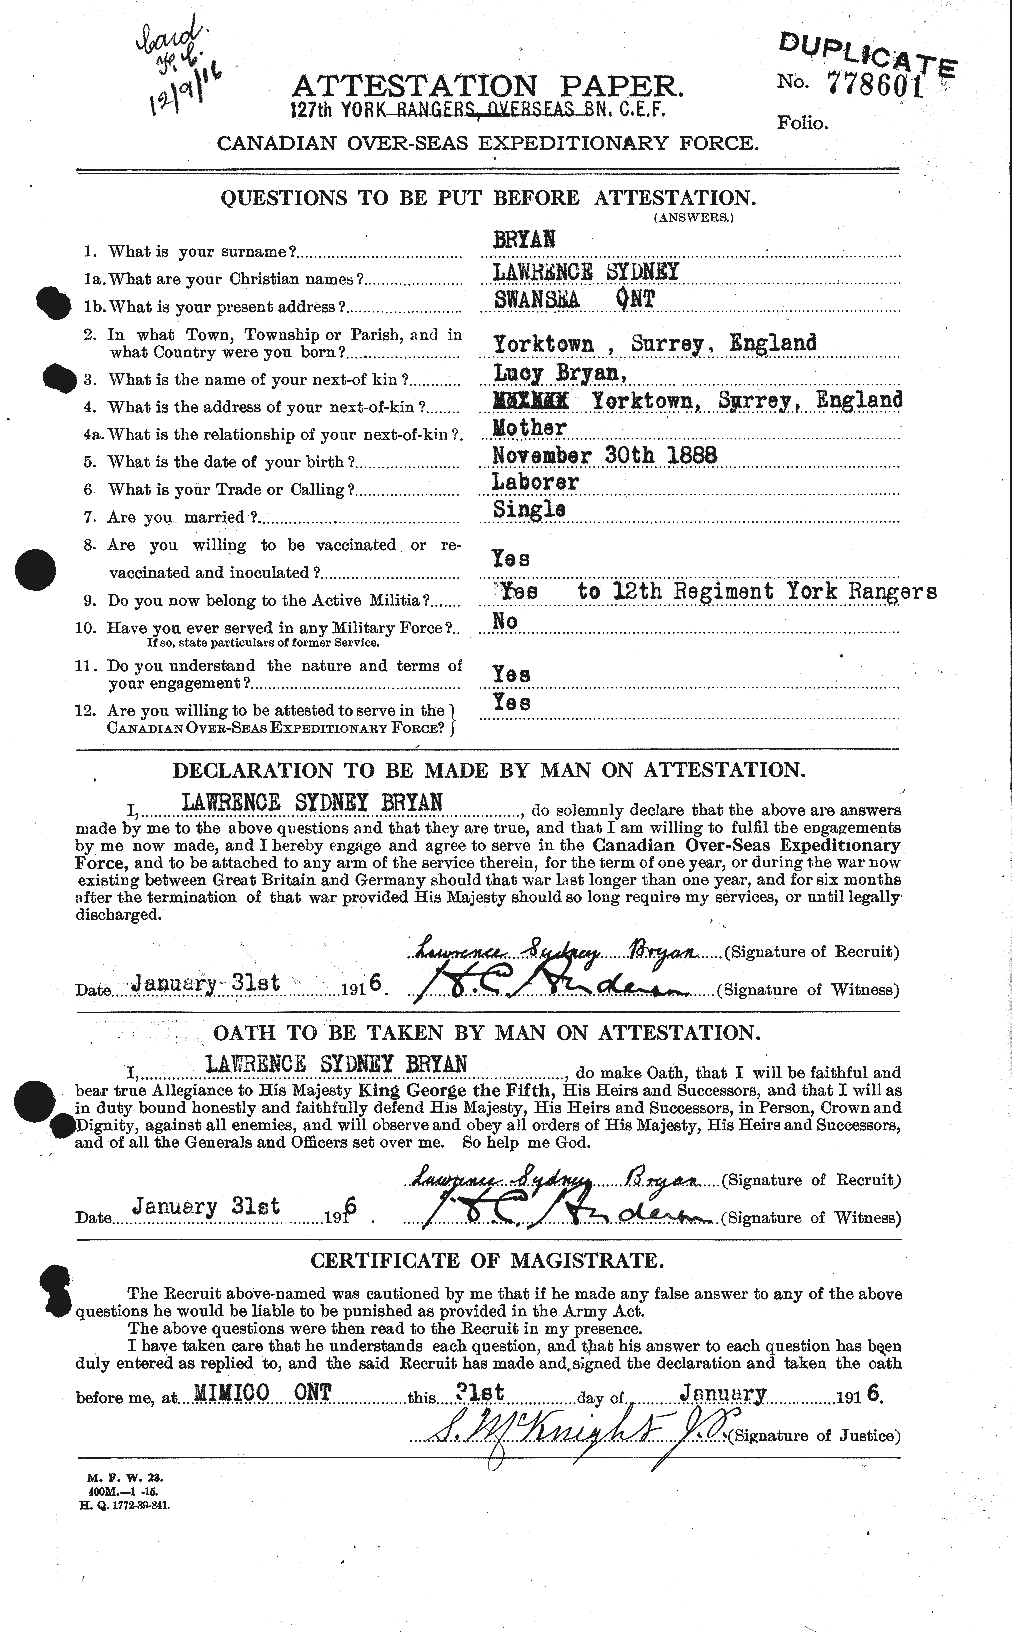 Dossiers du Personnel de la Première Guerre mondiale - CEC 270701a